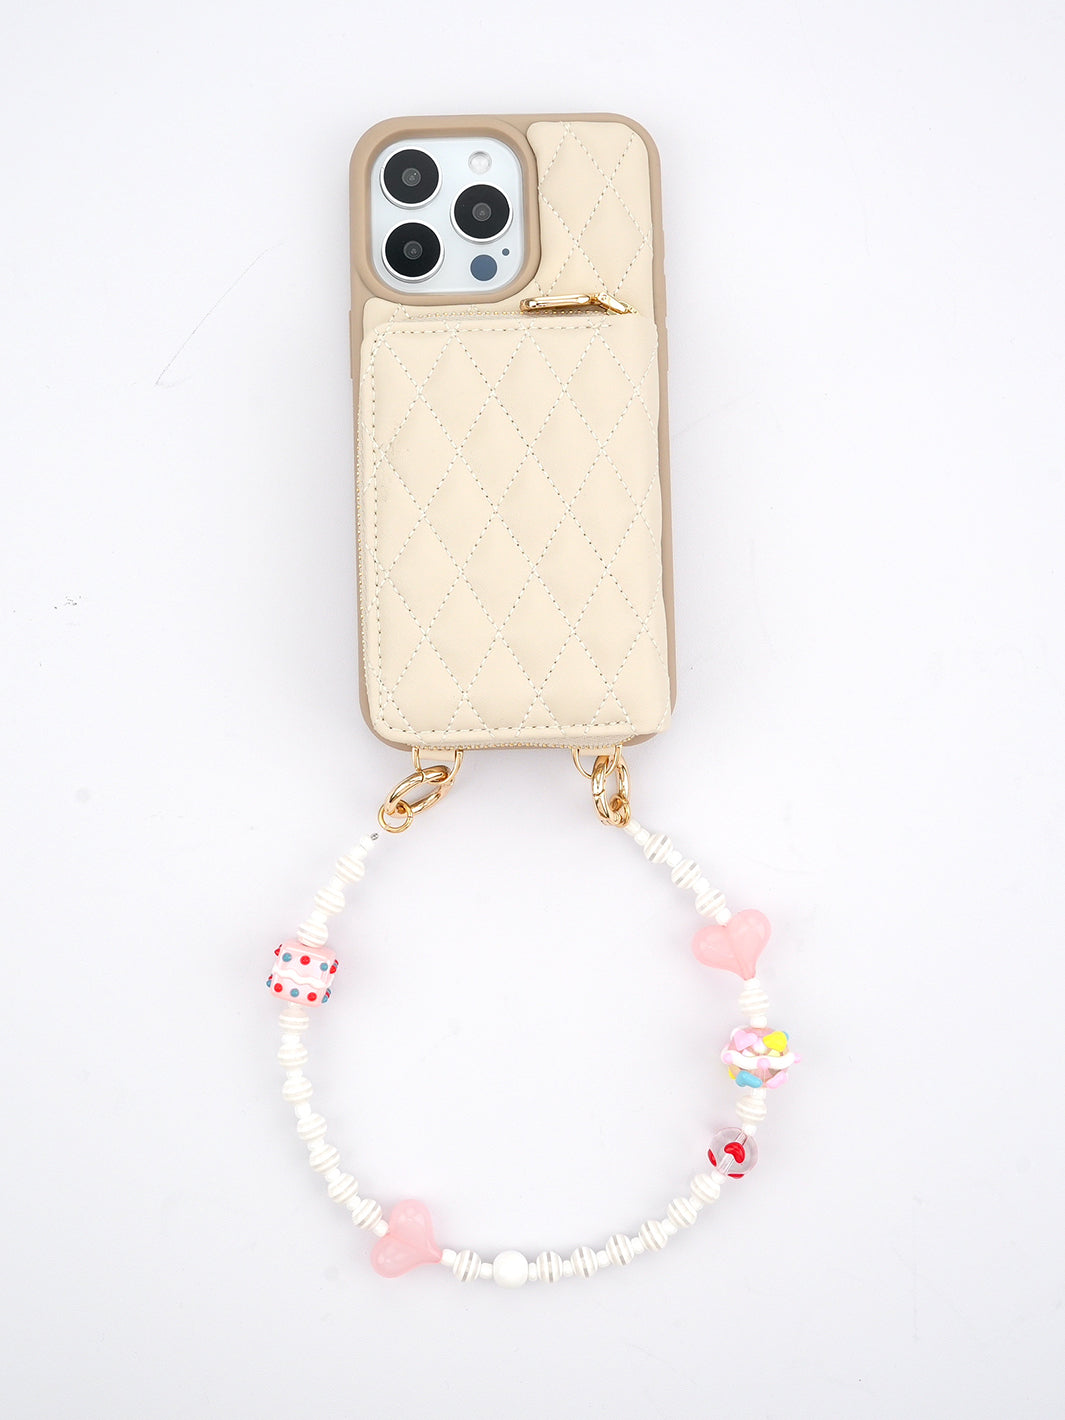 Valentine's Day Limited-Love Phone Case Wrist Strap